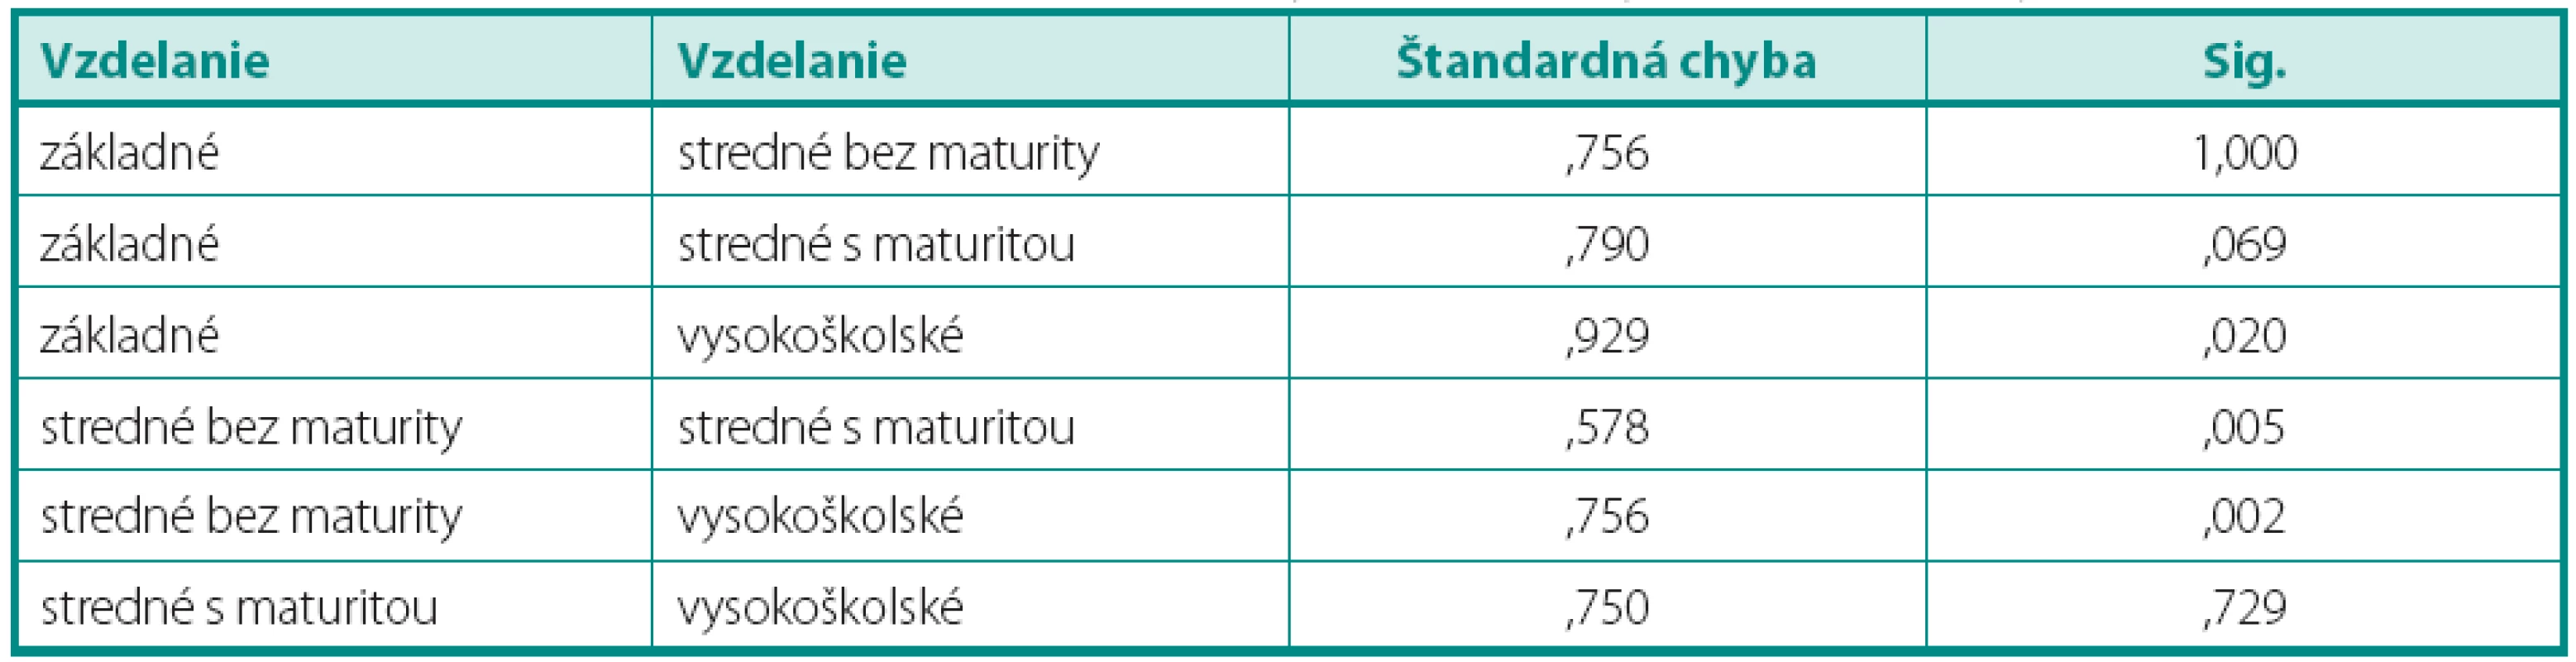 Post hoc komparácie priemerných hodnotení fyzické zdravia podľa vzdelanie
Table 4. Post hoc comparisons of average ratings of physical health by education (Tukey HSD)